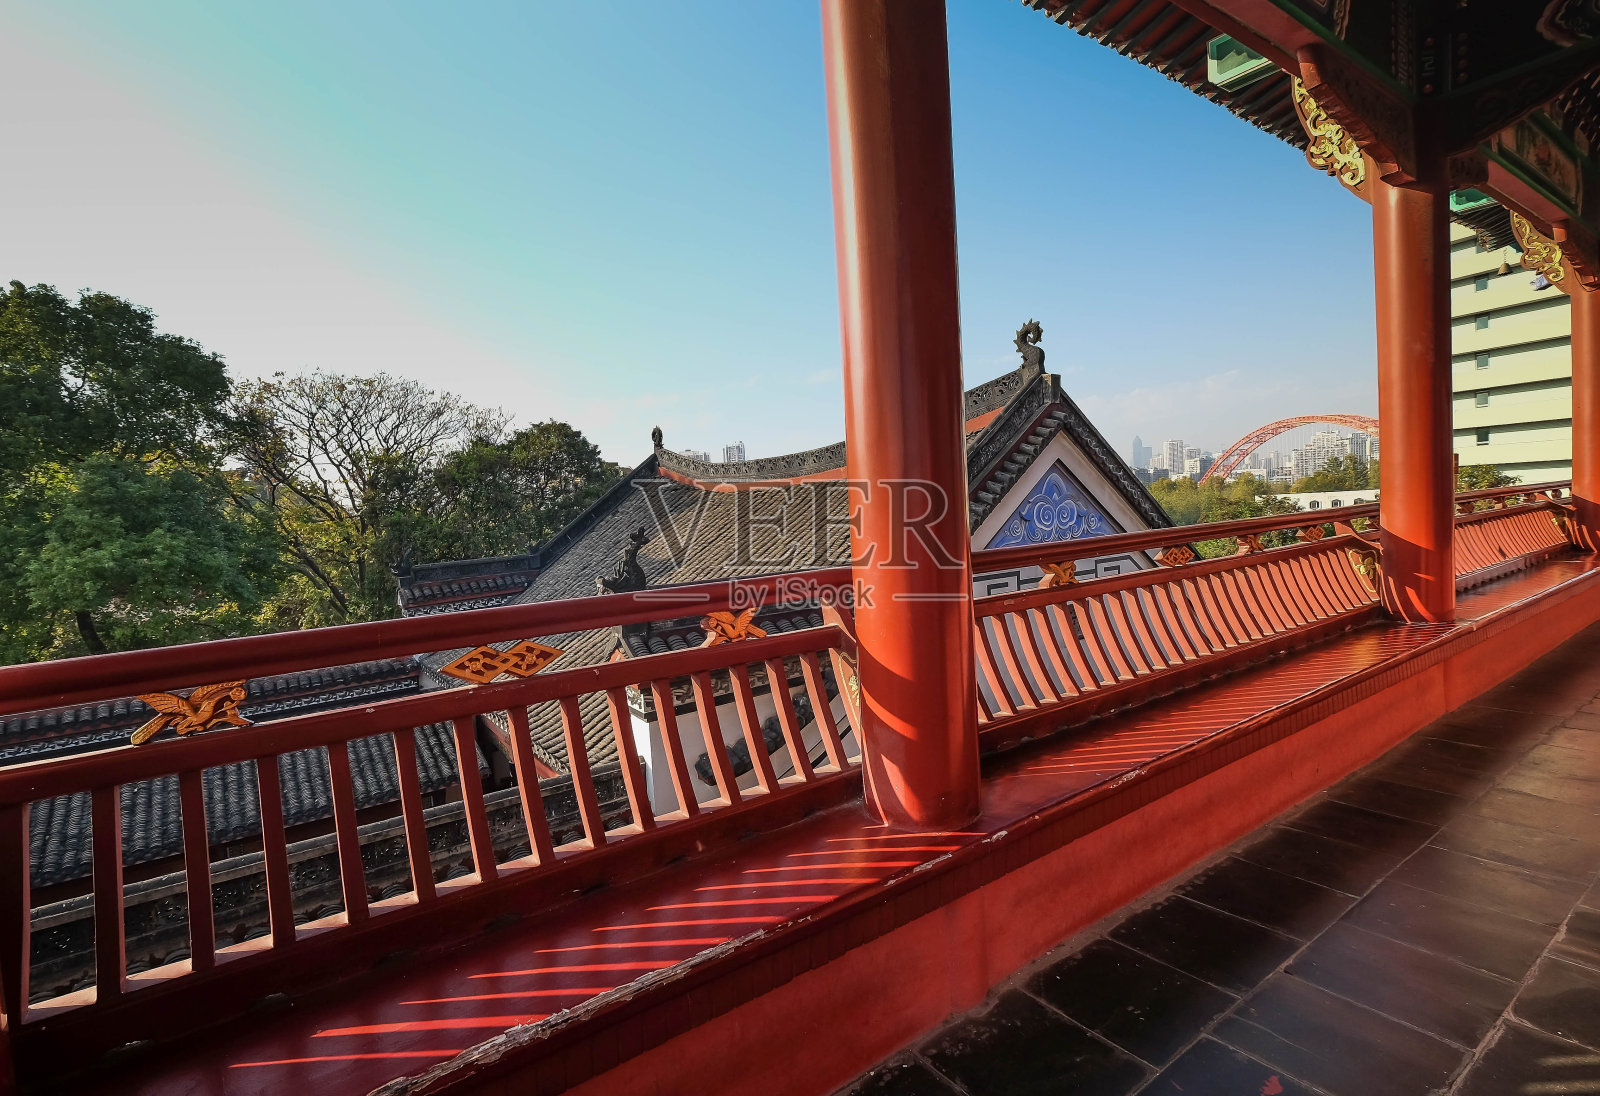 中国湖北省武汉到古宫来赏诗的游客照片摄影图片